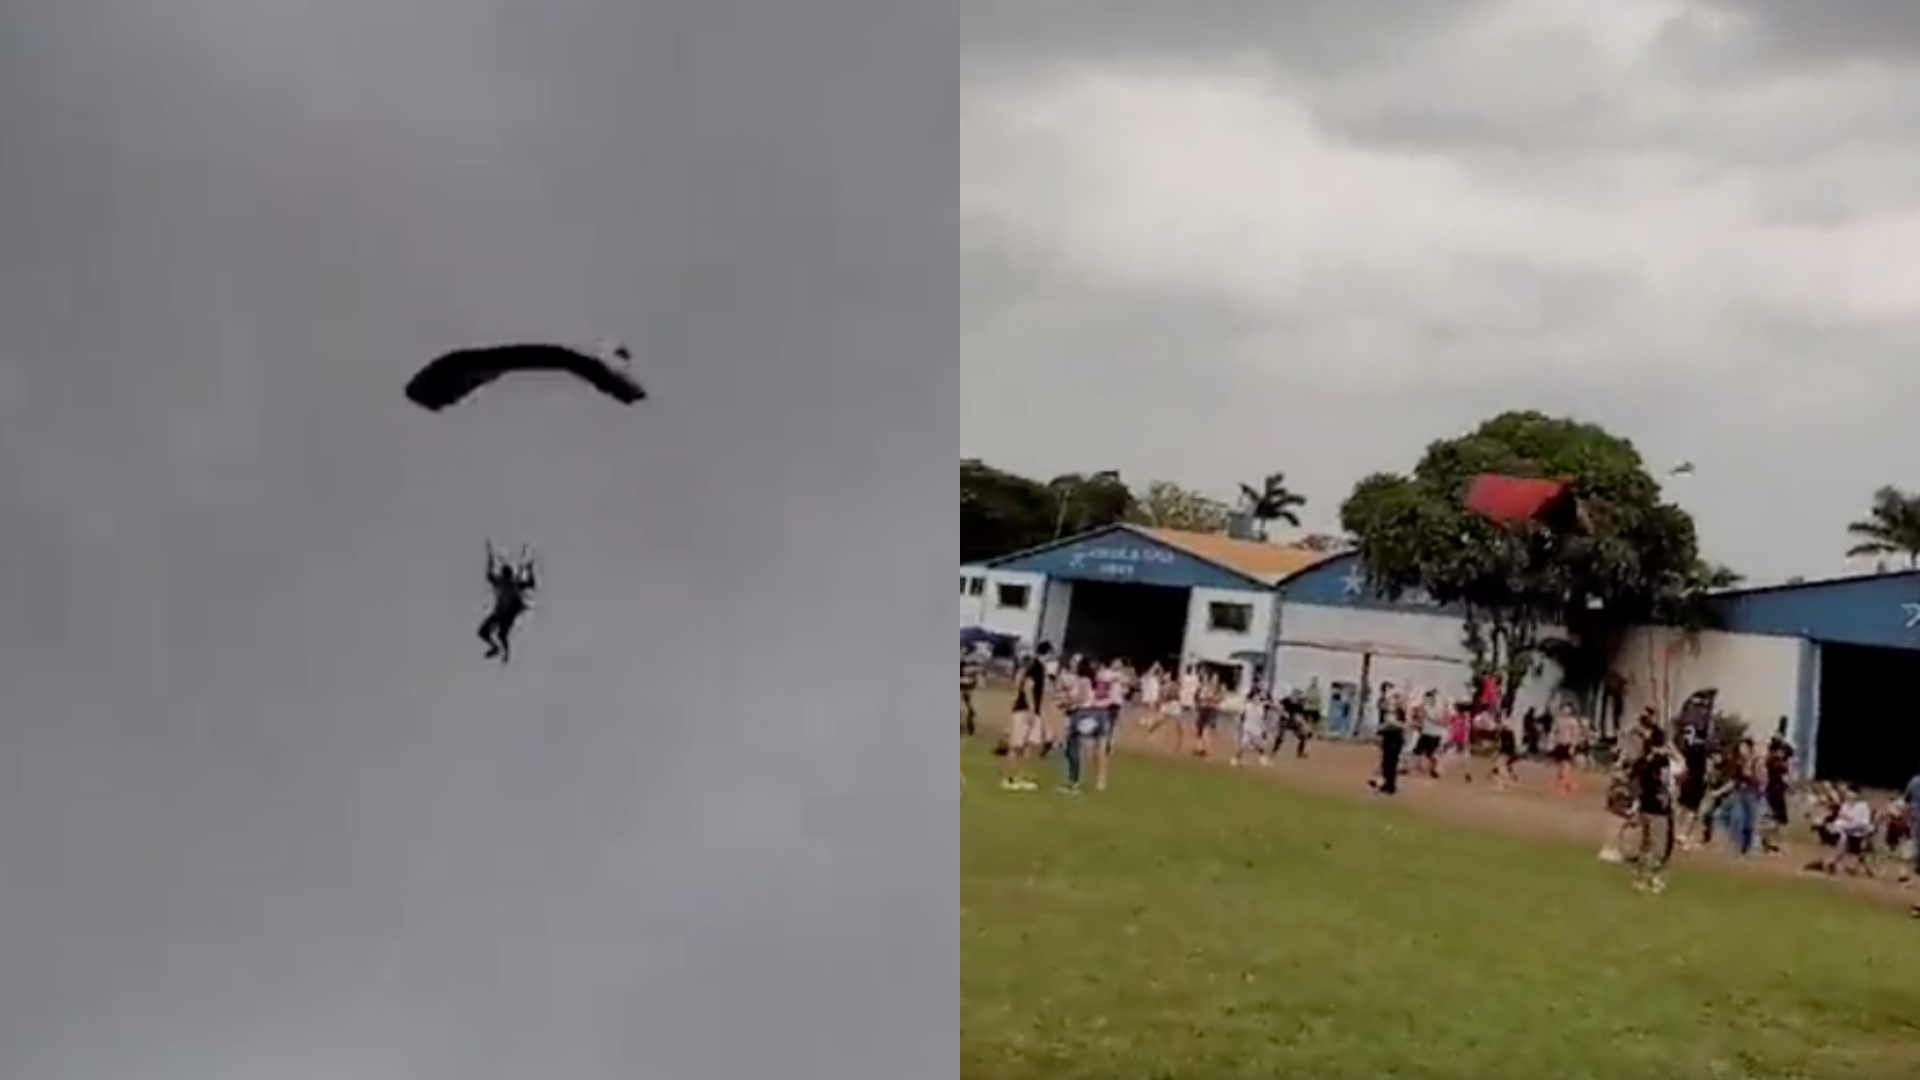 Vídeo: Homem morre após ser atingido por paraquedista em evento de aviação, em SP